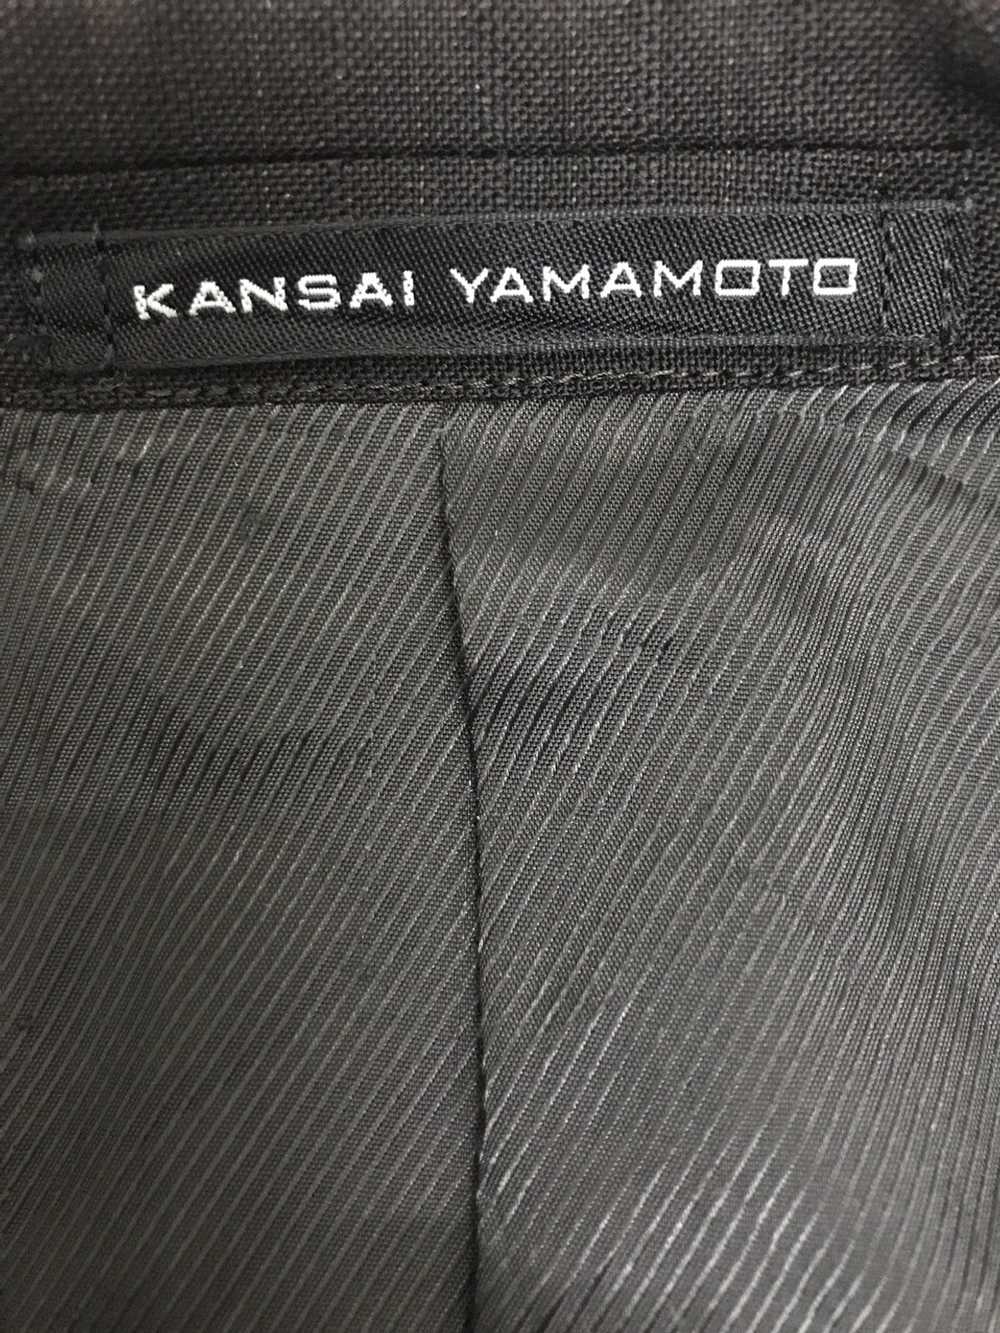 Kansai Yamamoto KANSAI YAMAMOTO BLAZER - image 11